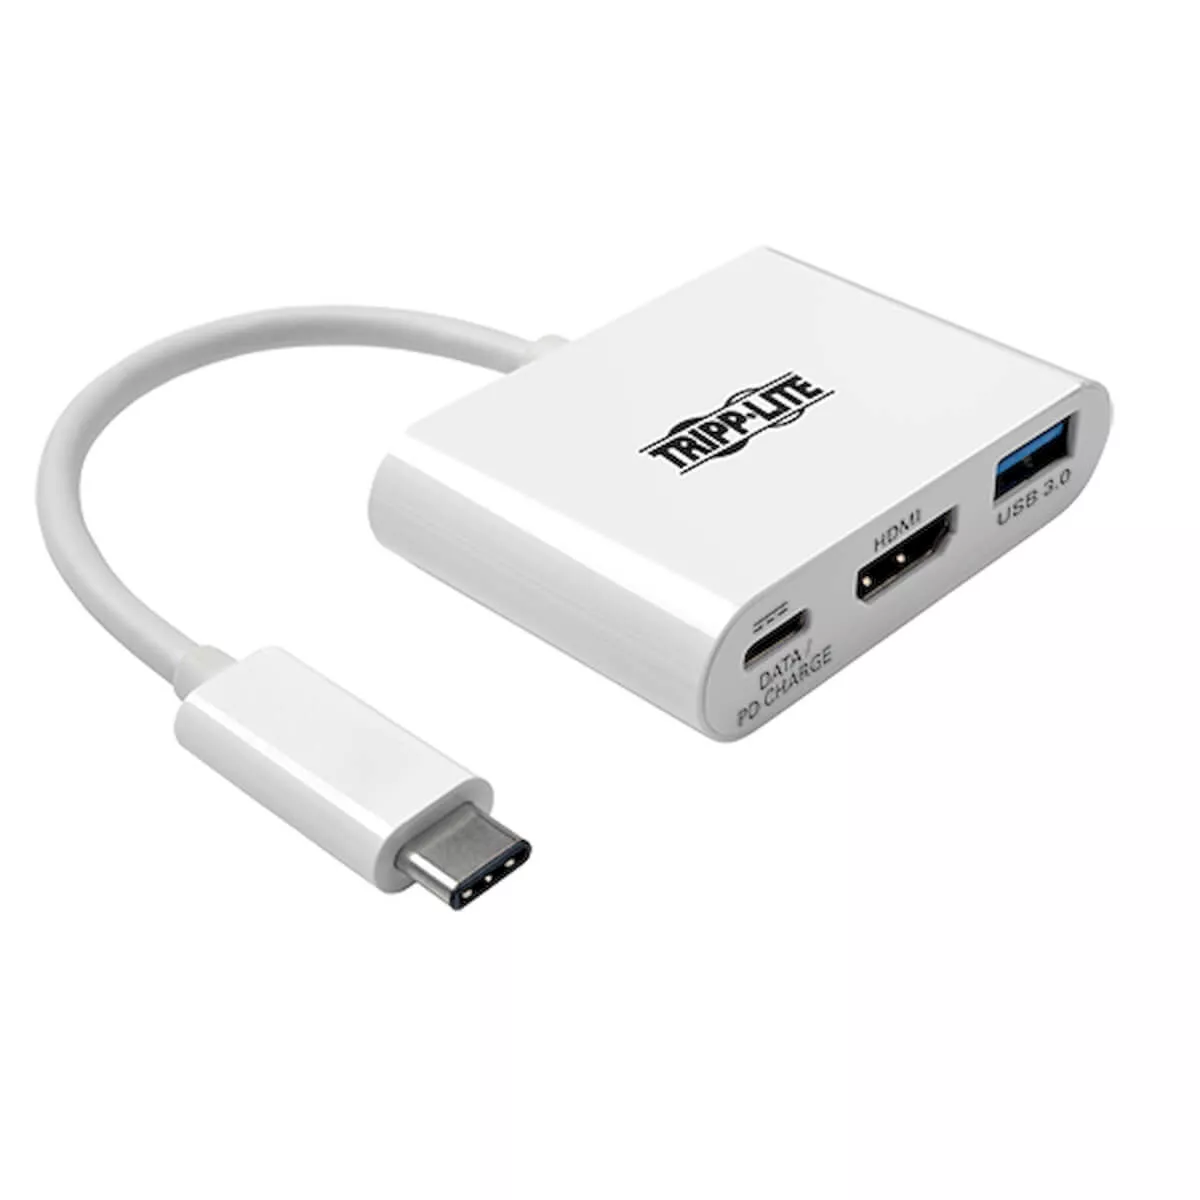 Achat EATON TRIPPLITE USB-C to HDMI 4K Adapter with USB-A et autres produits de la marque Tripp Lite